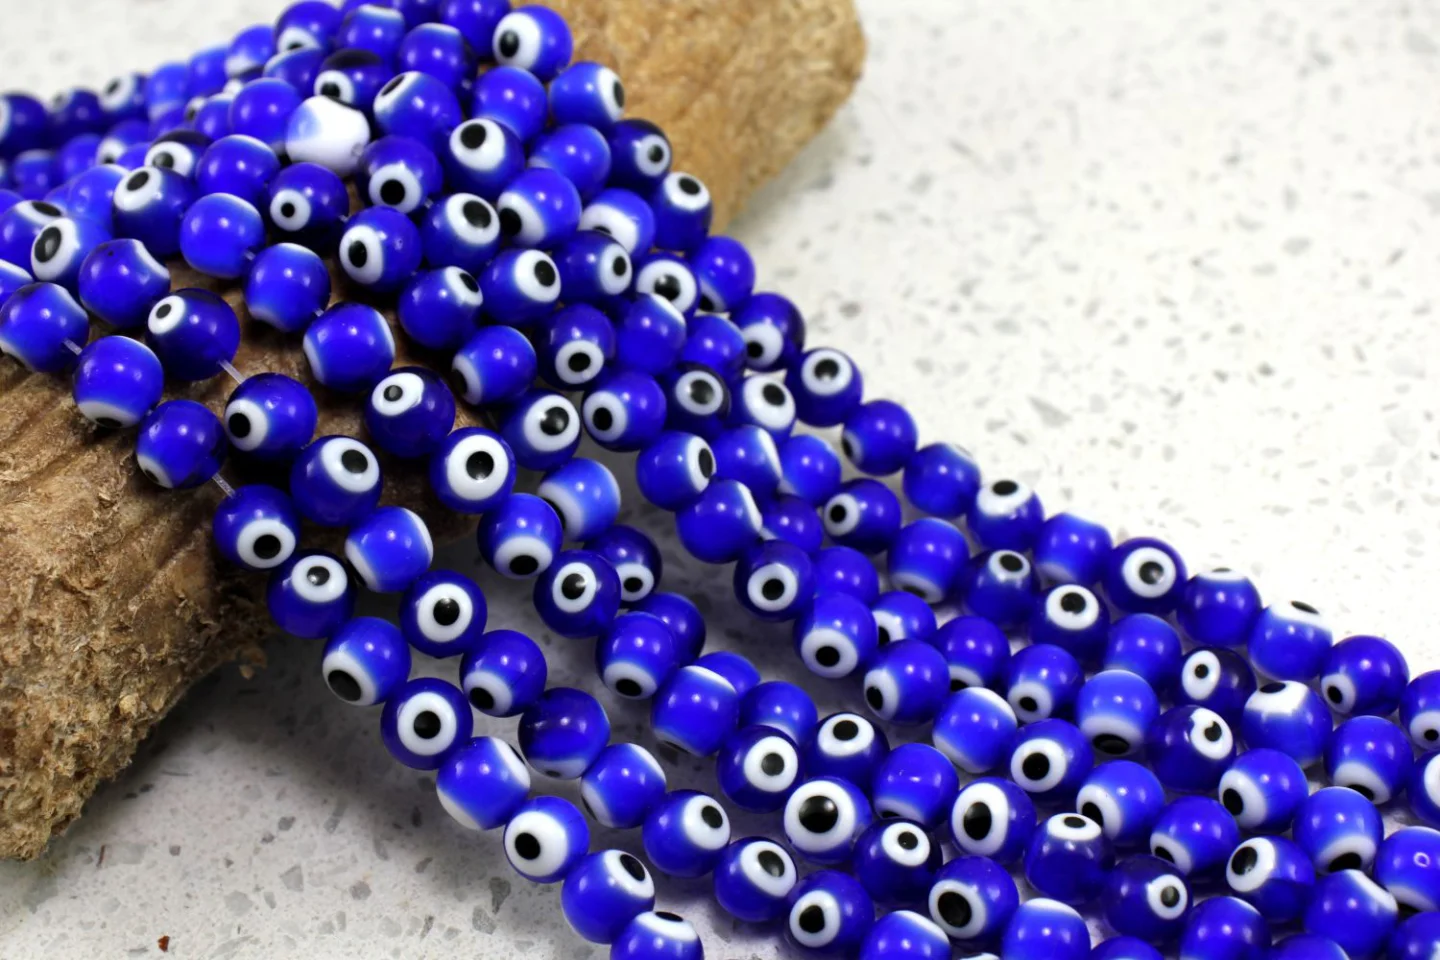 8mm-navy-blue-glass-evil-eye-beads.